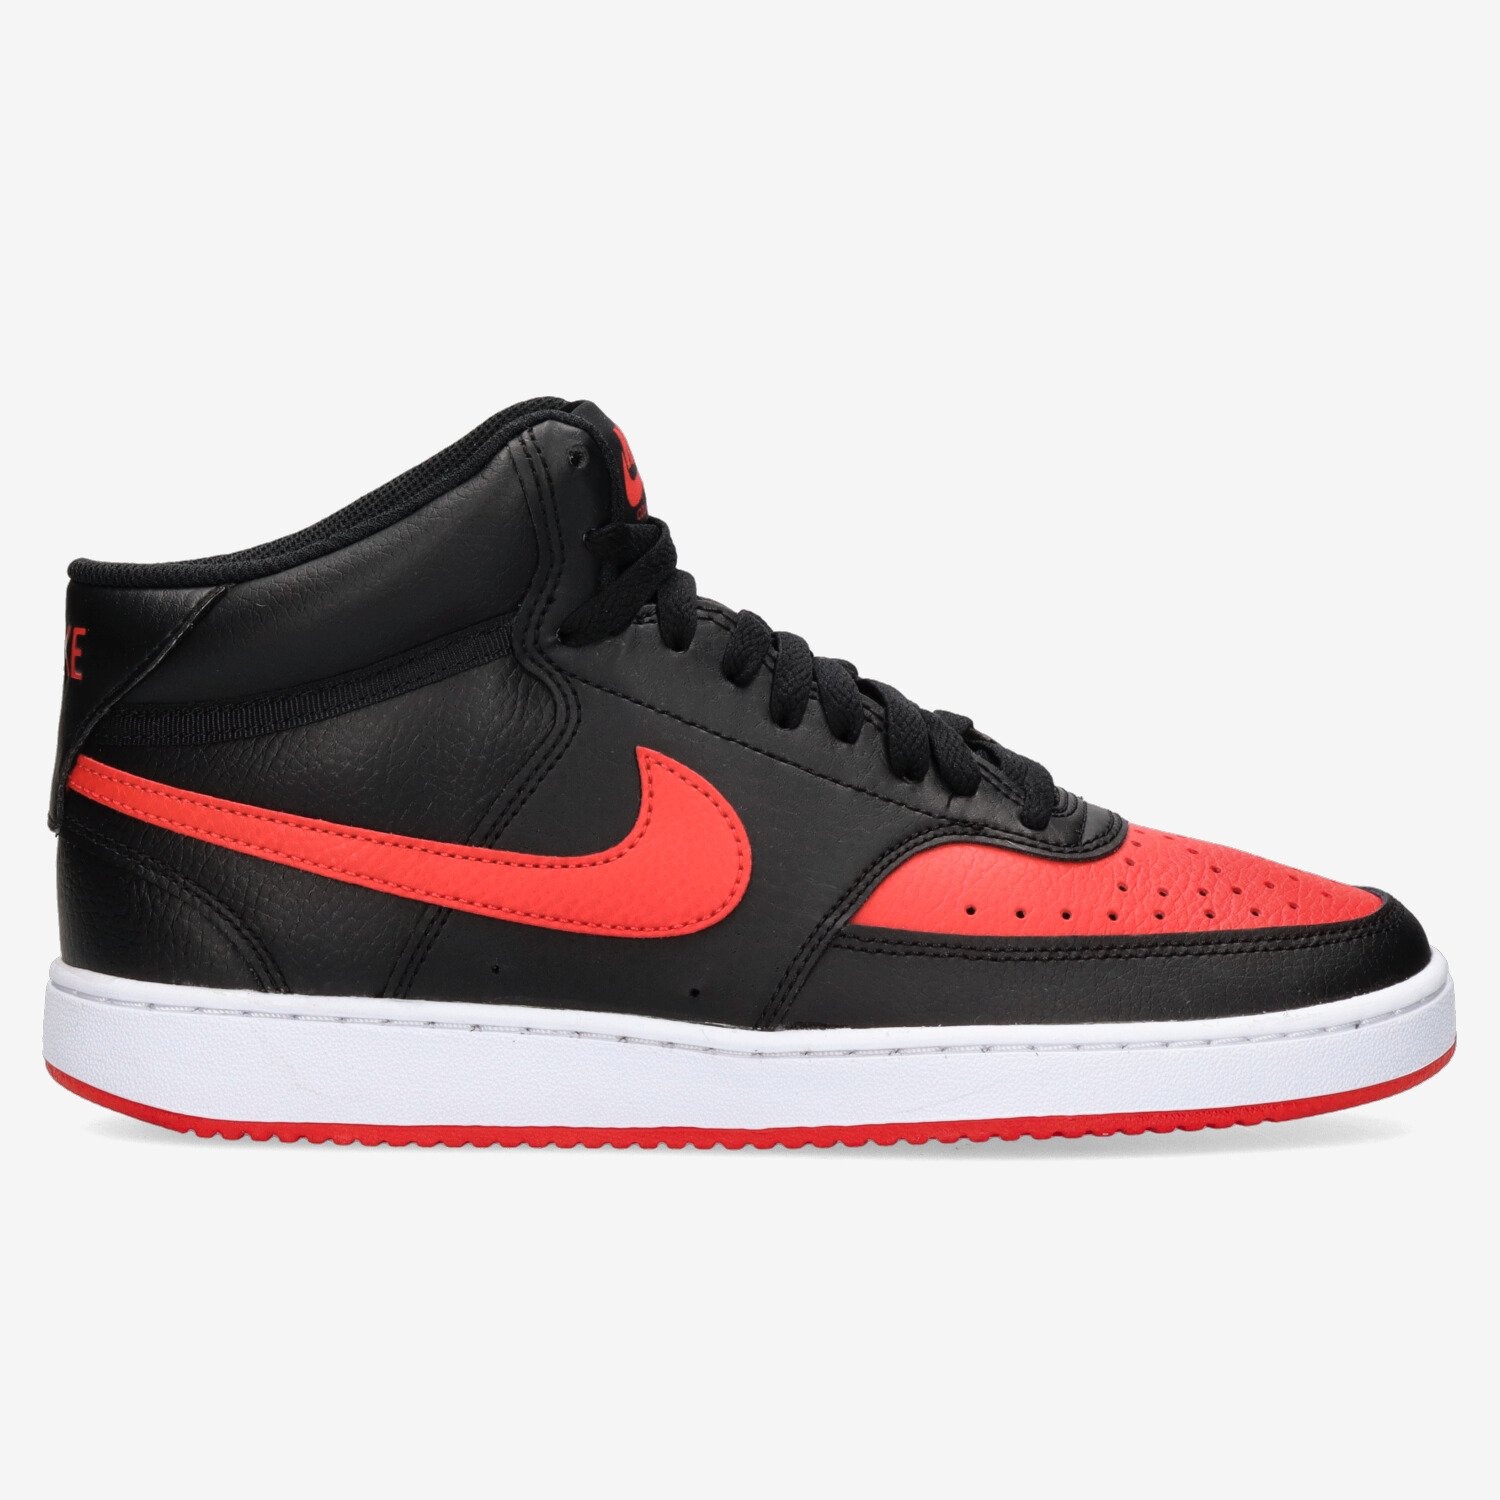 Nike Court Vision Mid heren sneaker - Zwart rood - Maat 47